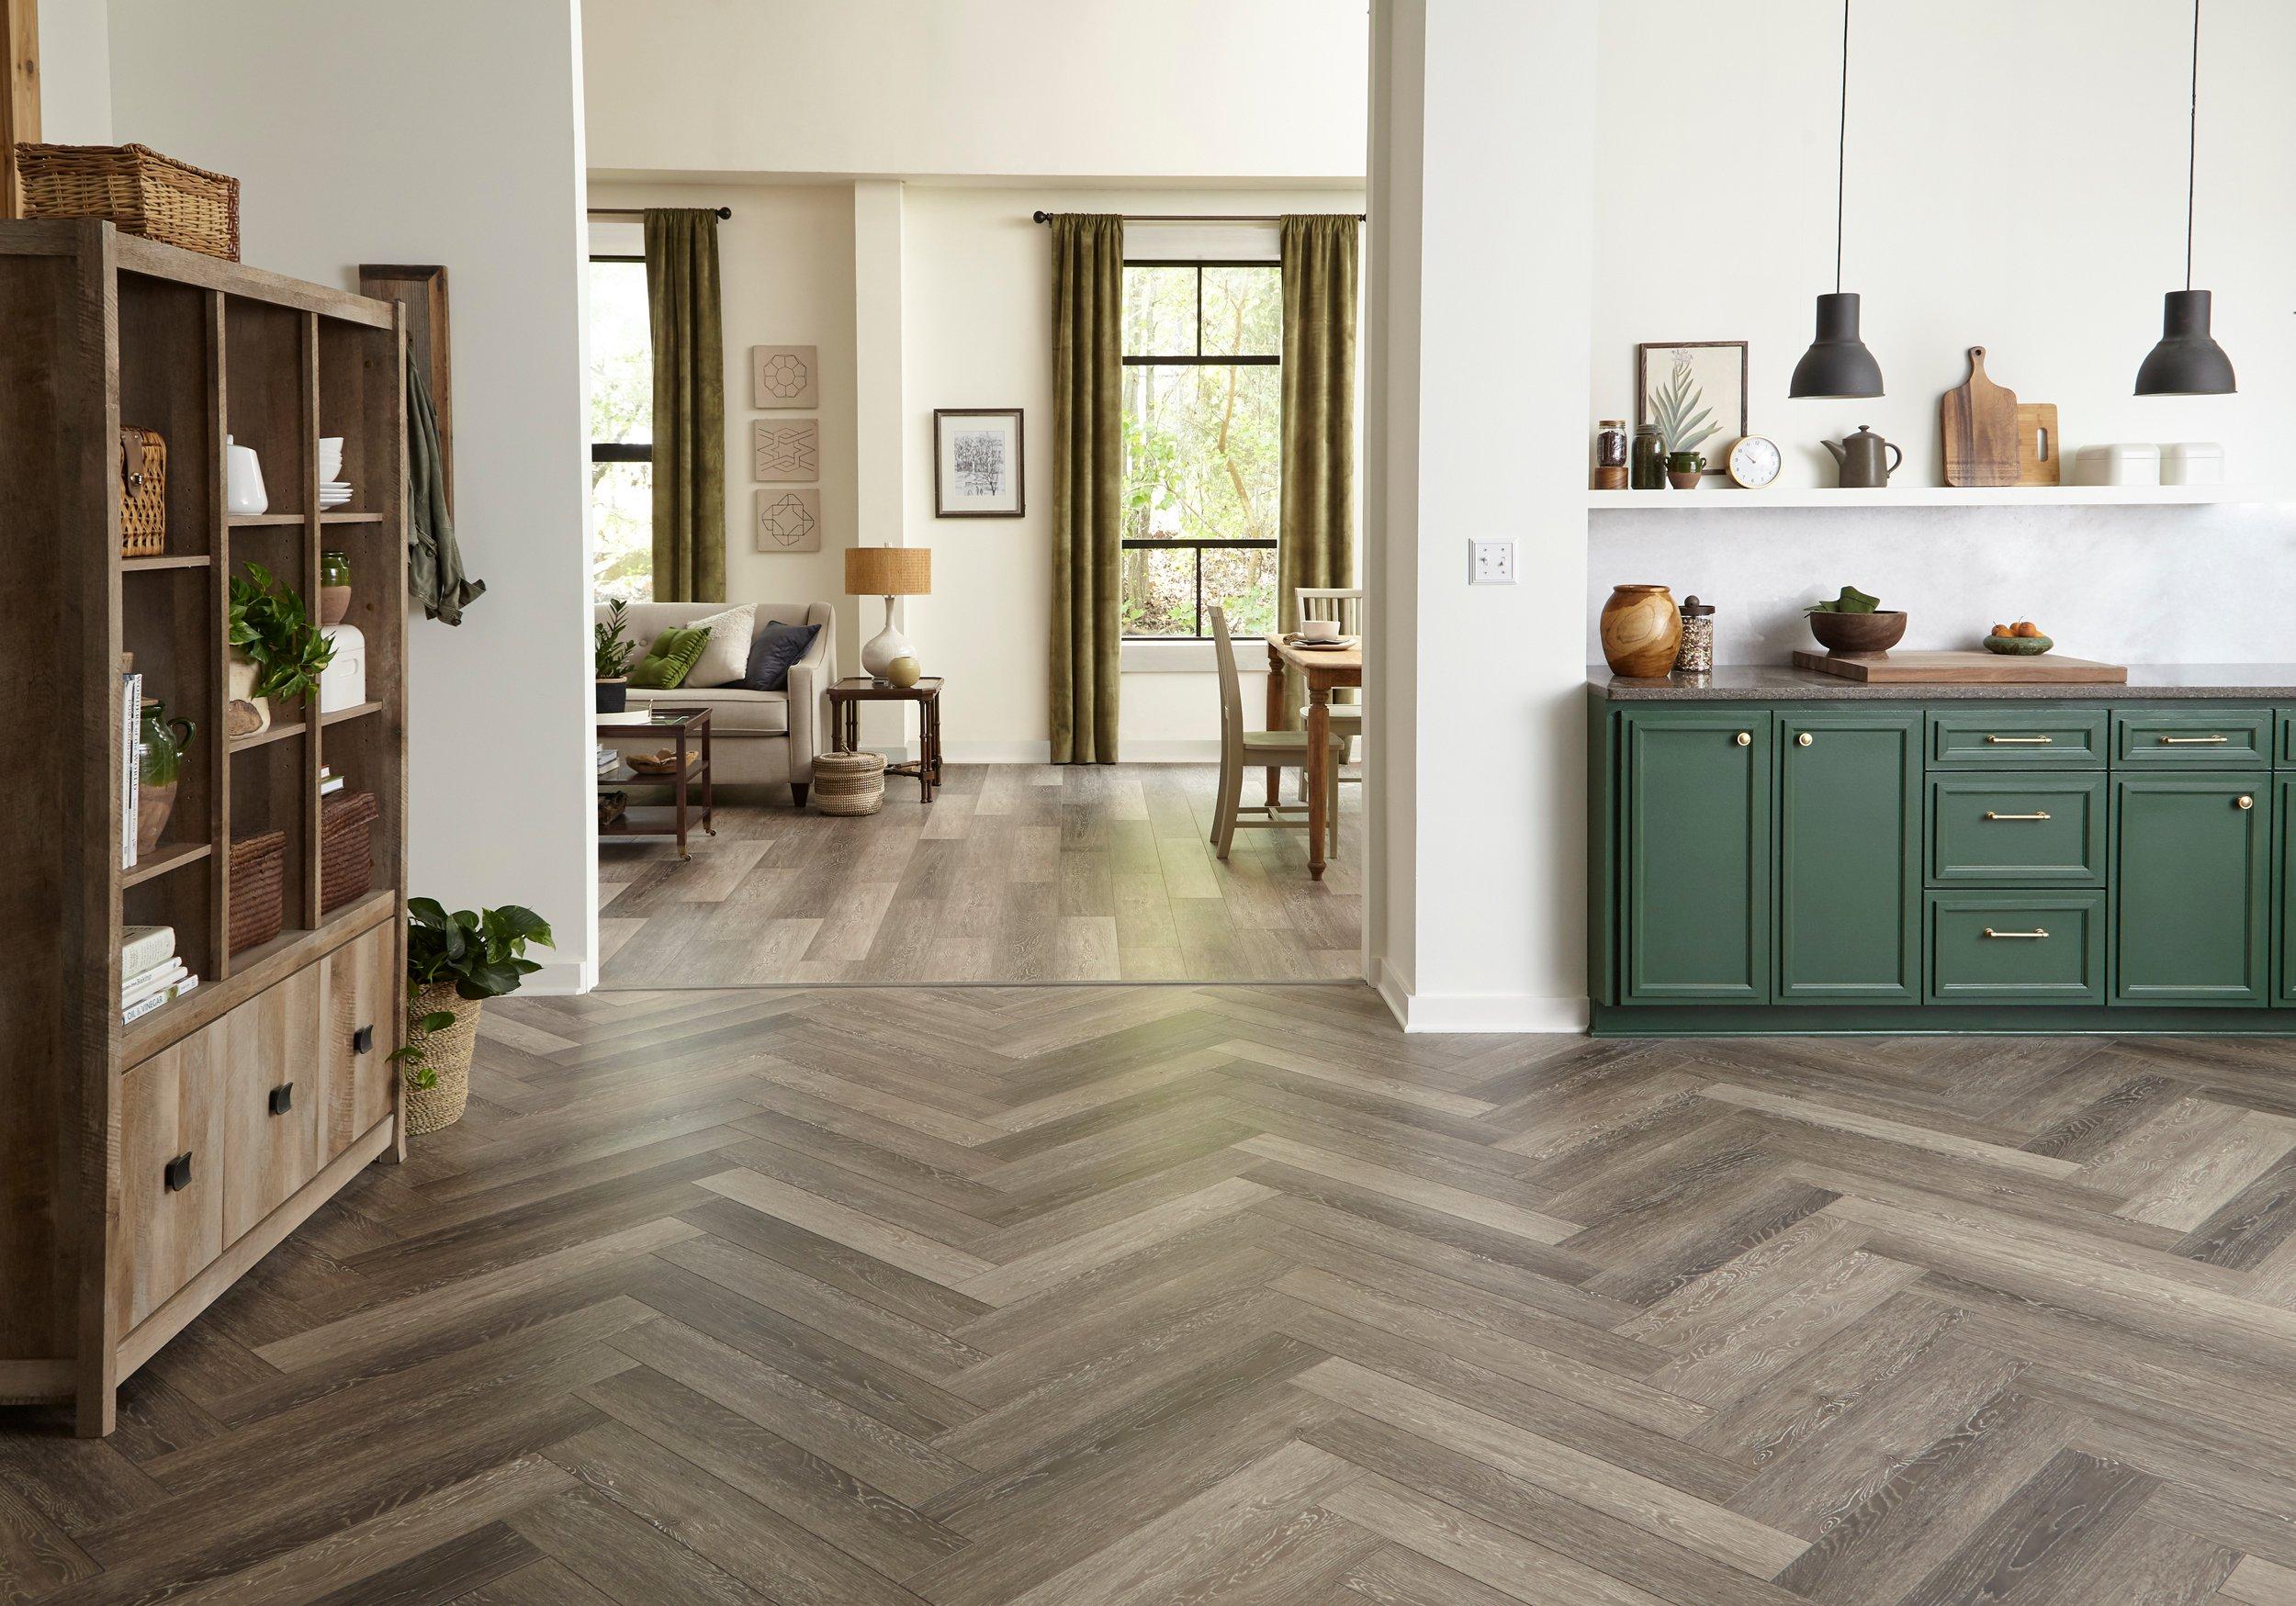 Water Resistant Laminate Floor, Herringbone Wood Tile Floor